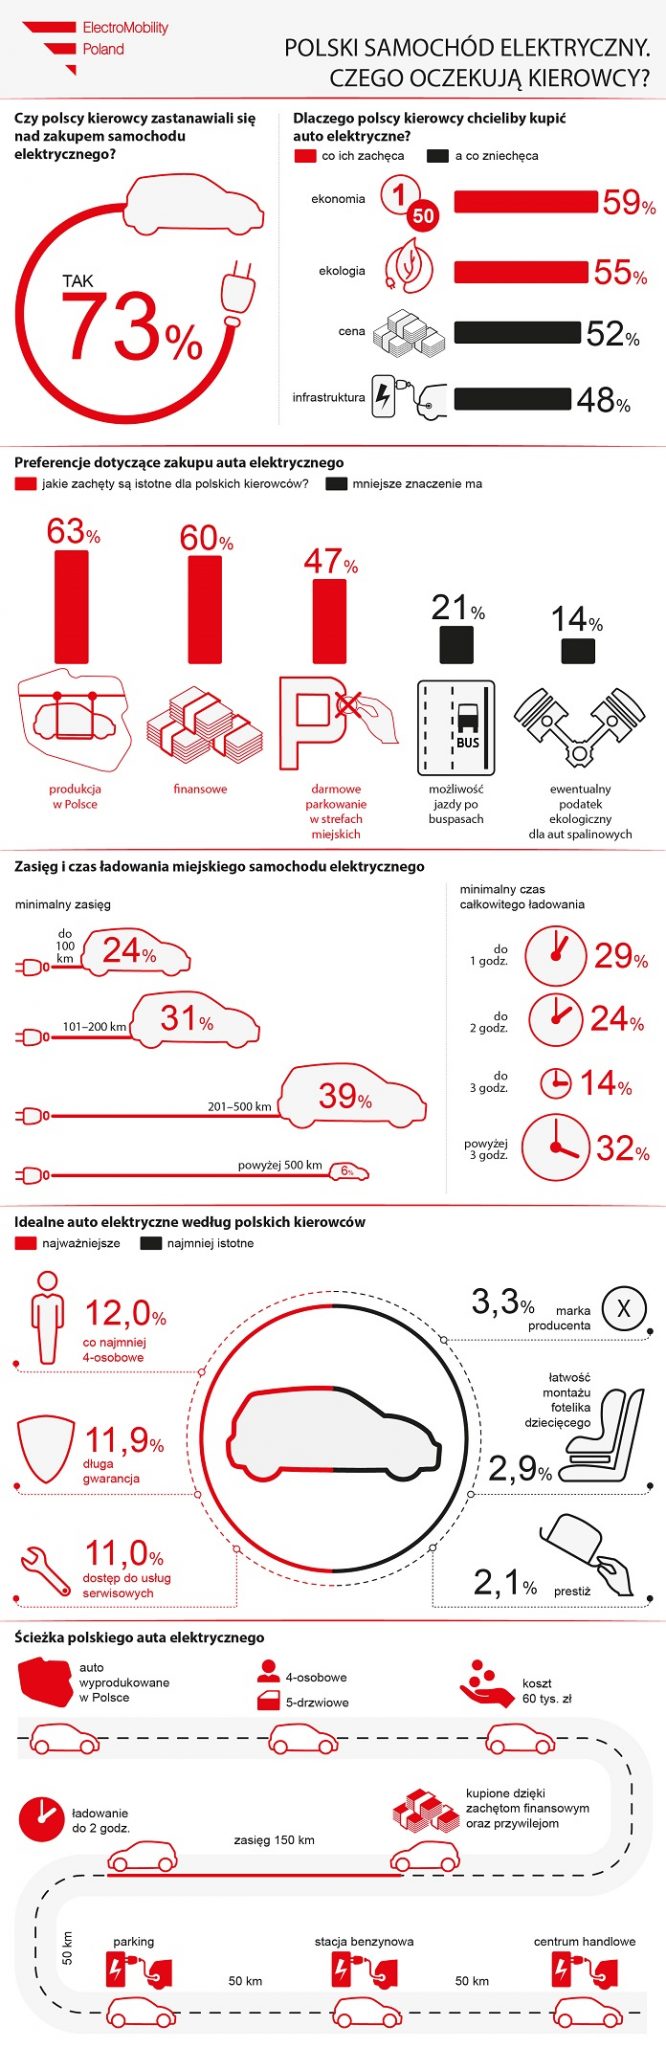 Polski samochód elektryczny infografika